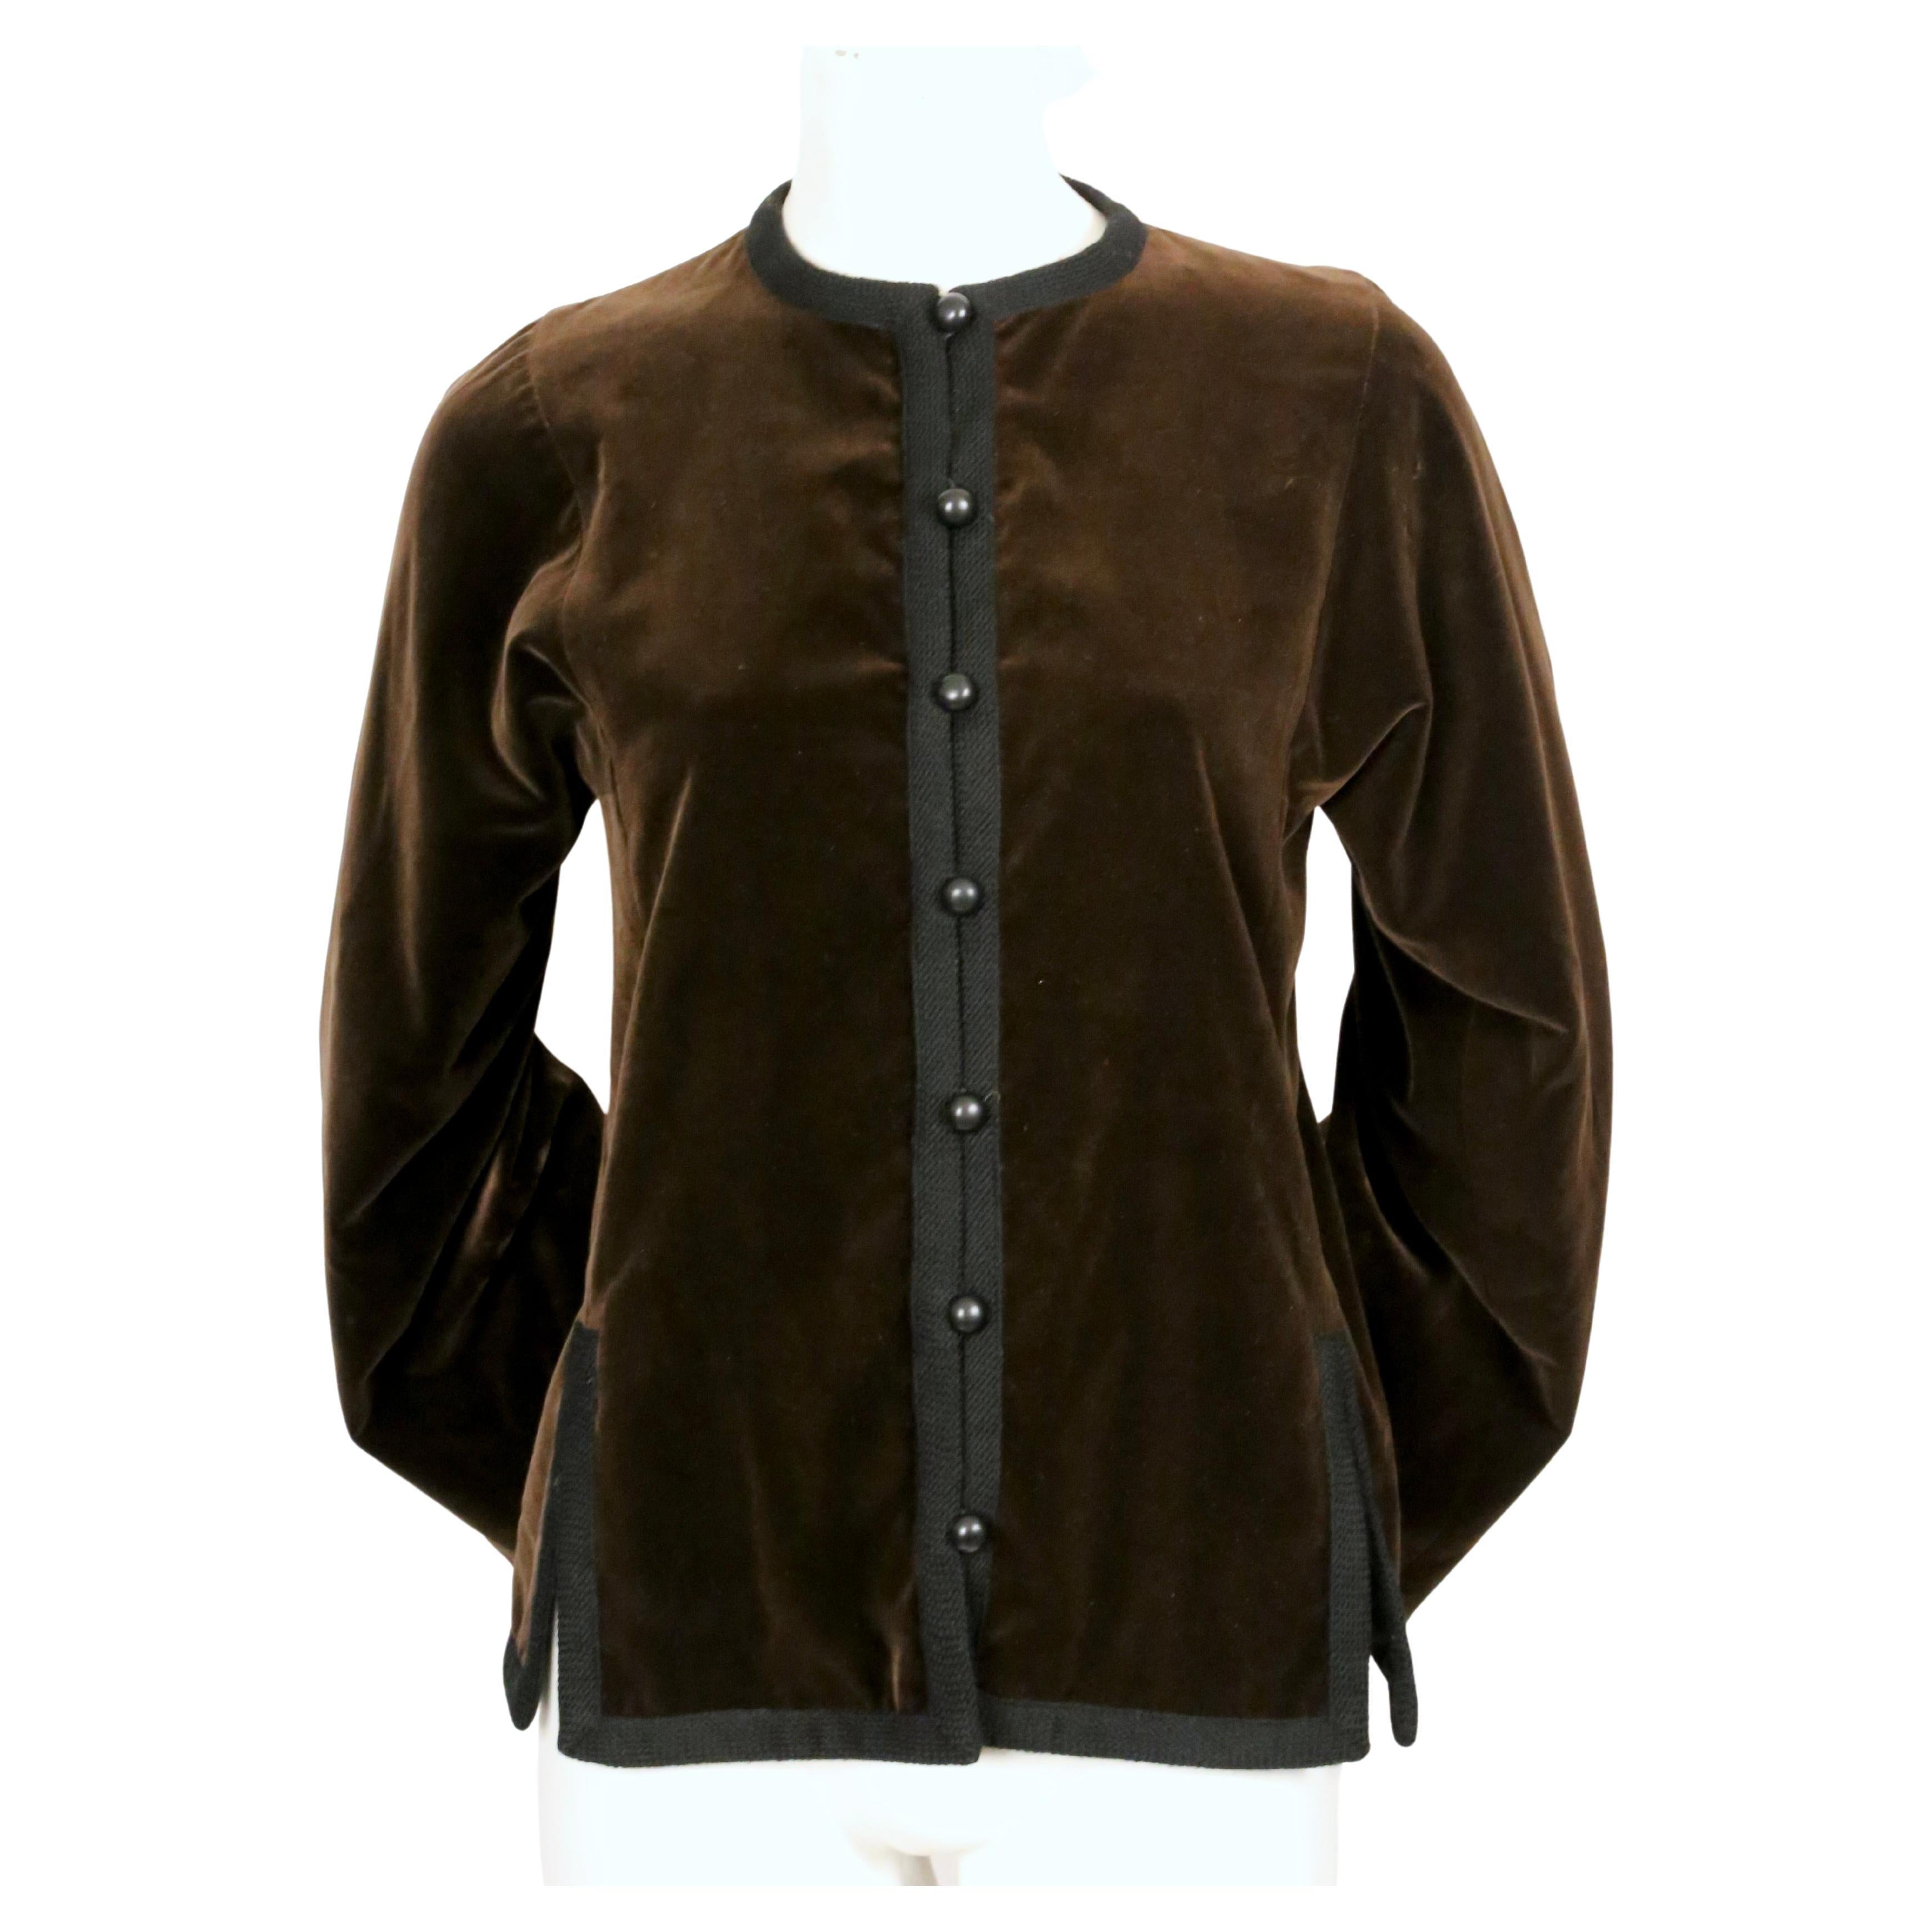 Reichhaltige braune Samtjacke mit schwarzem, gewebtem Wollbesatz, entworfen von Yves Saint Laurent im Herbst 1976, wie auf dem Laufsteg zu sehen.  Jacke hat volle Ärmel und Schlitze eine Front seine. Jacke ist ein Französisch Größe 36 beschriftet